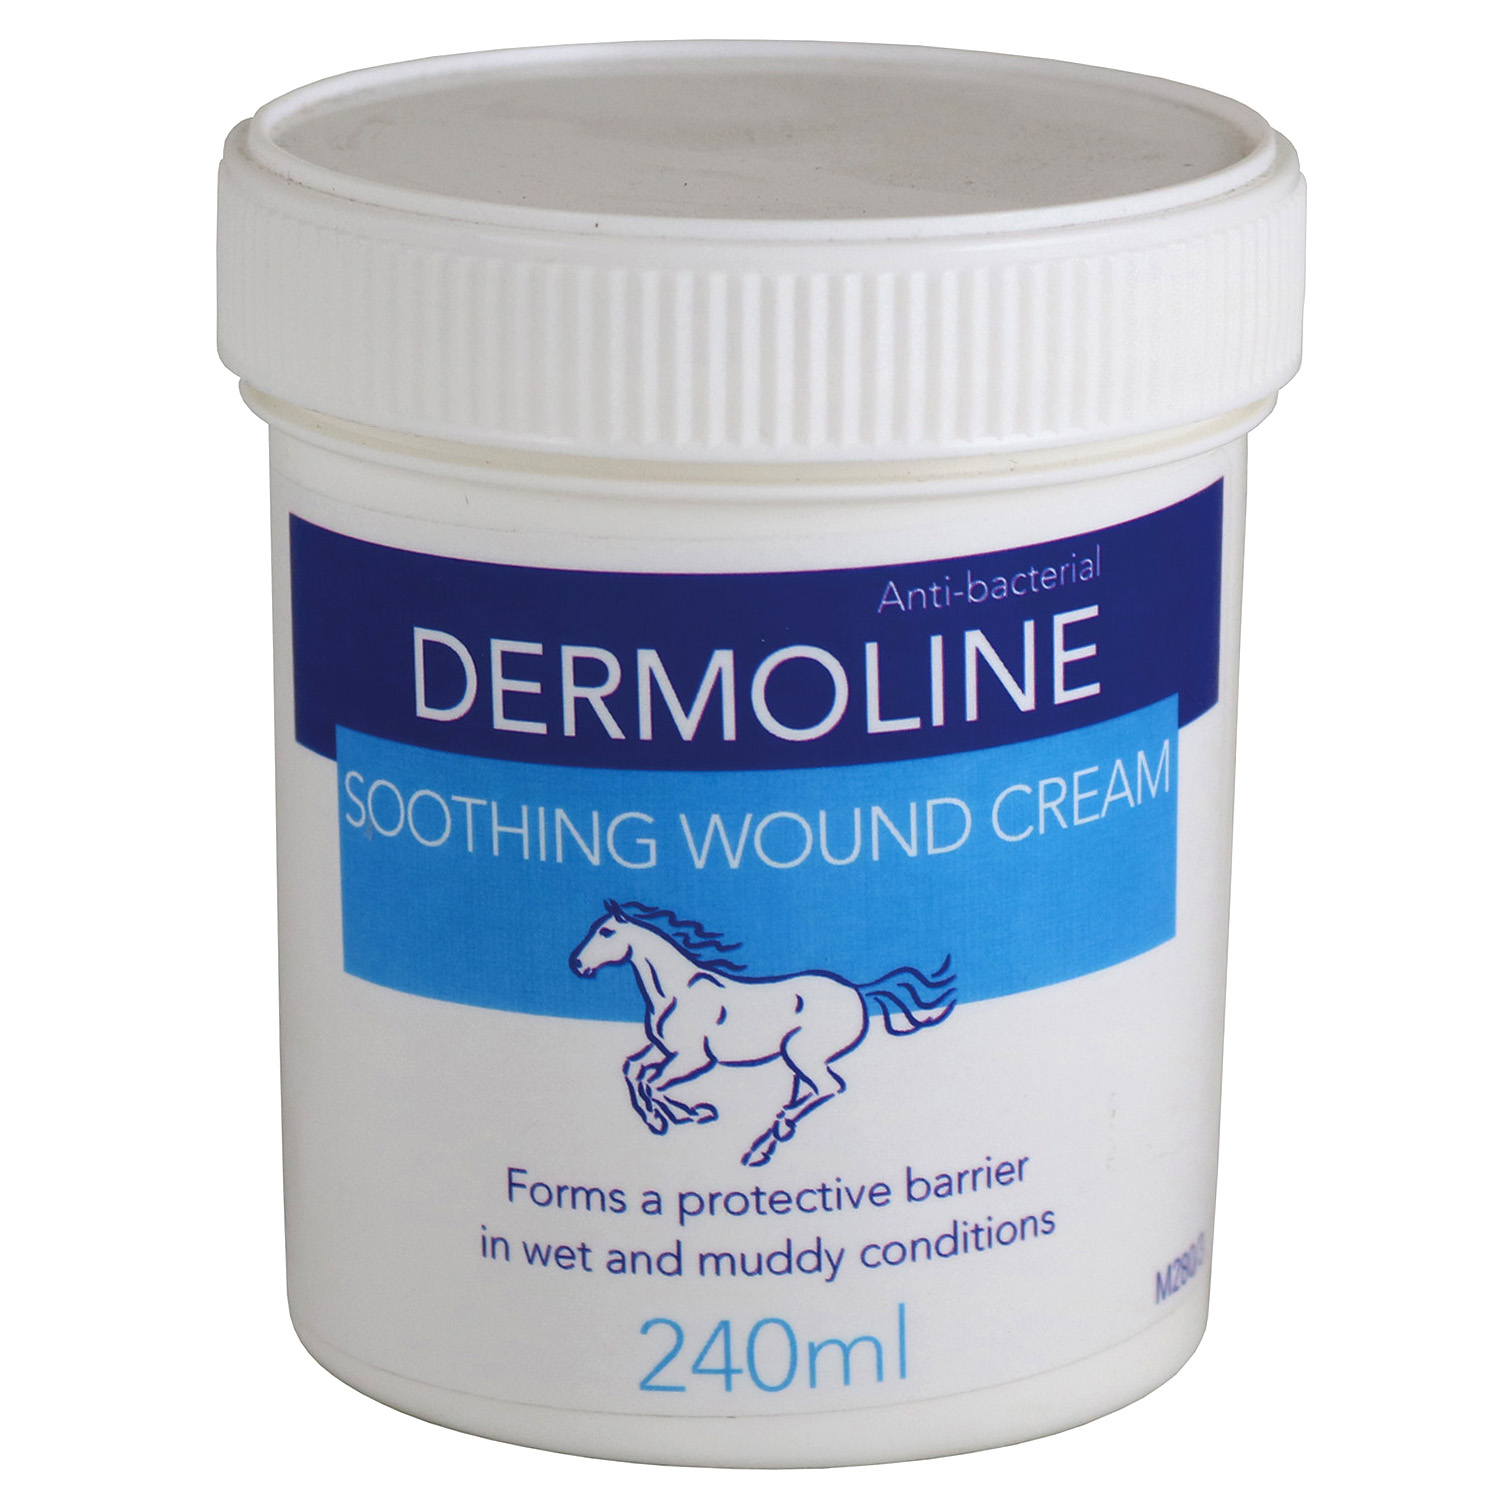 DERMOLINE SOOTHING WOUND CREAM DERMOLINE SOOTHING WOUND CREAM 240 ML  240 ML